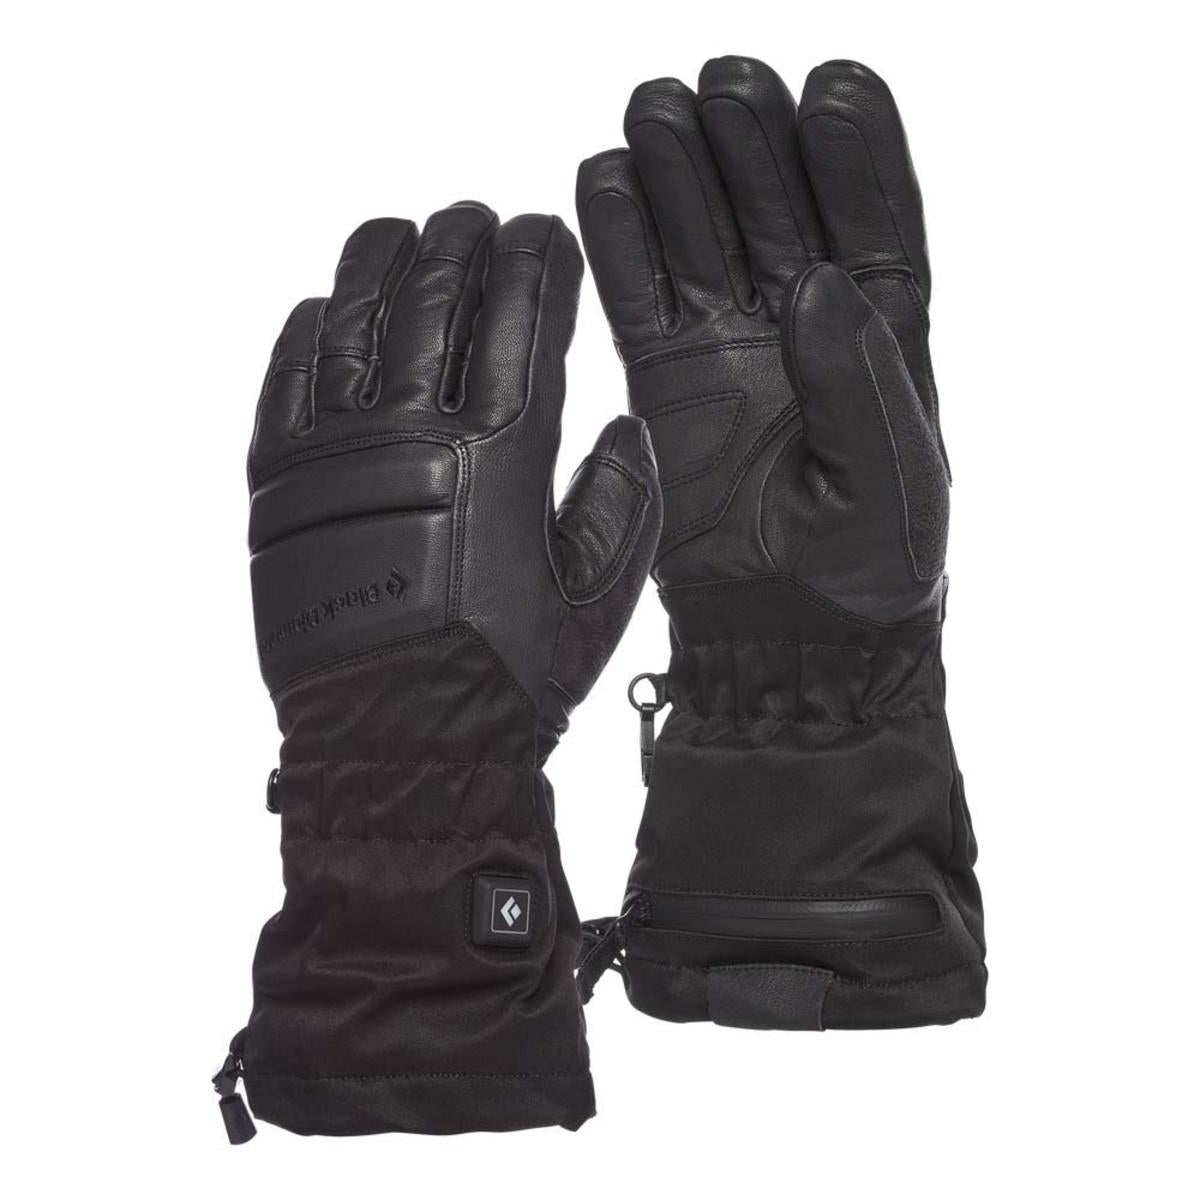 Black Diamond Solano Heated Gloves